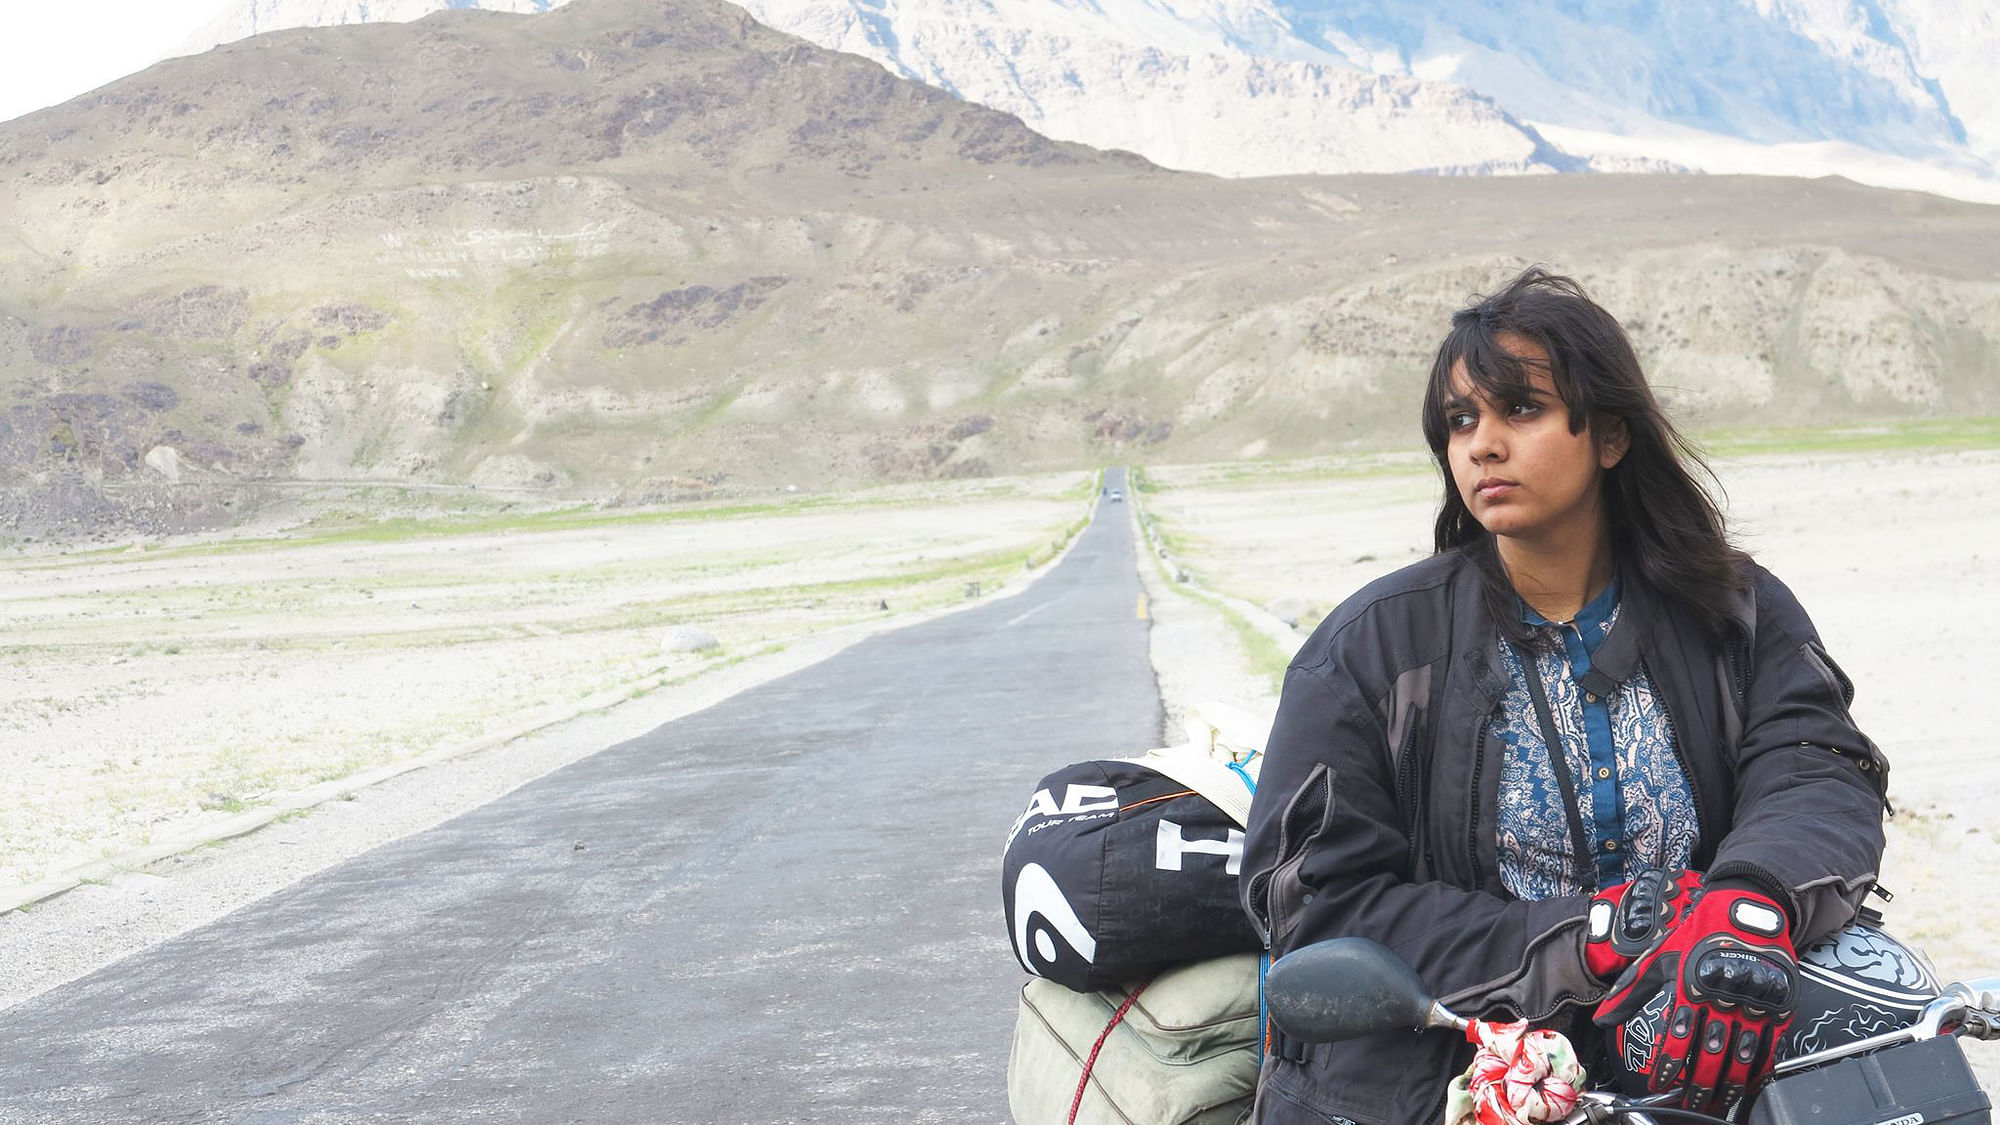 Zenith Irfan at Gilgit-Baltistan, Pakistan. (Photo Courtesy: Facebook/<a href="https://www.facebook.com/zenithirfan.zi/timeline">Zenith Irfan: 1 Girl 2 Wheels</a>)